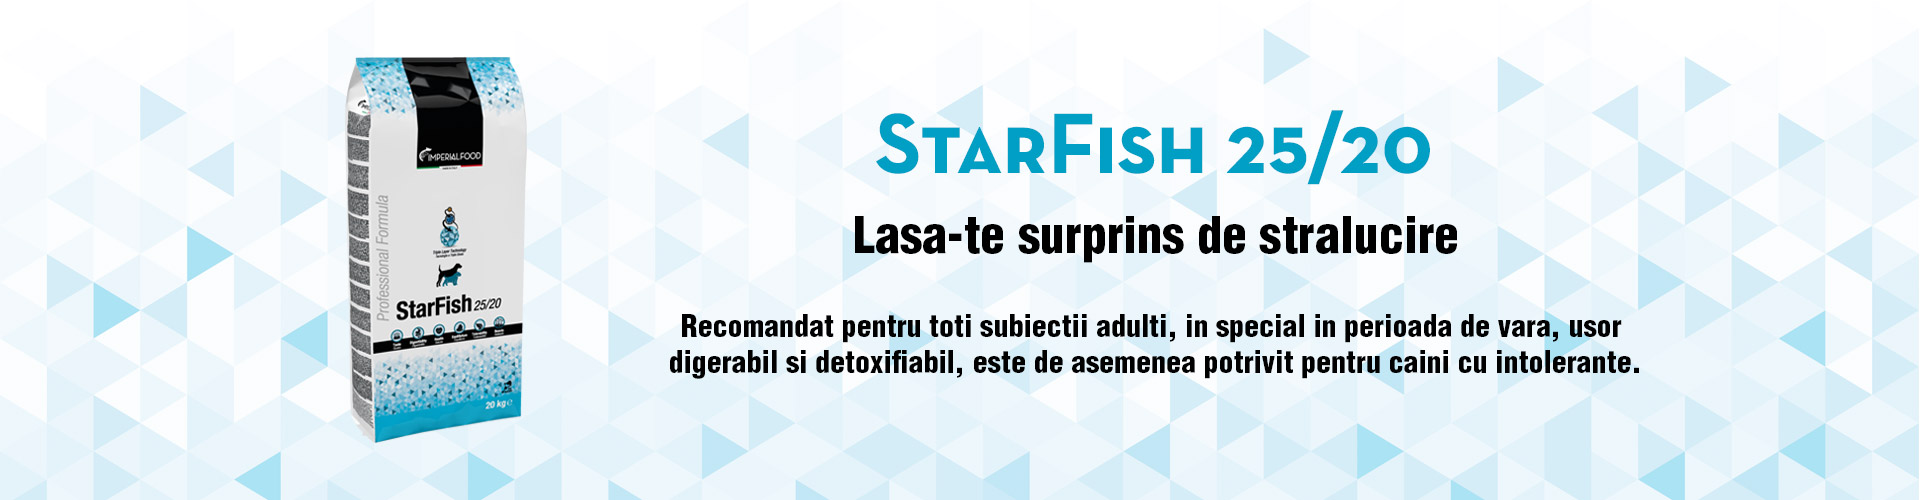 StarFish 25/20